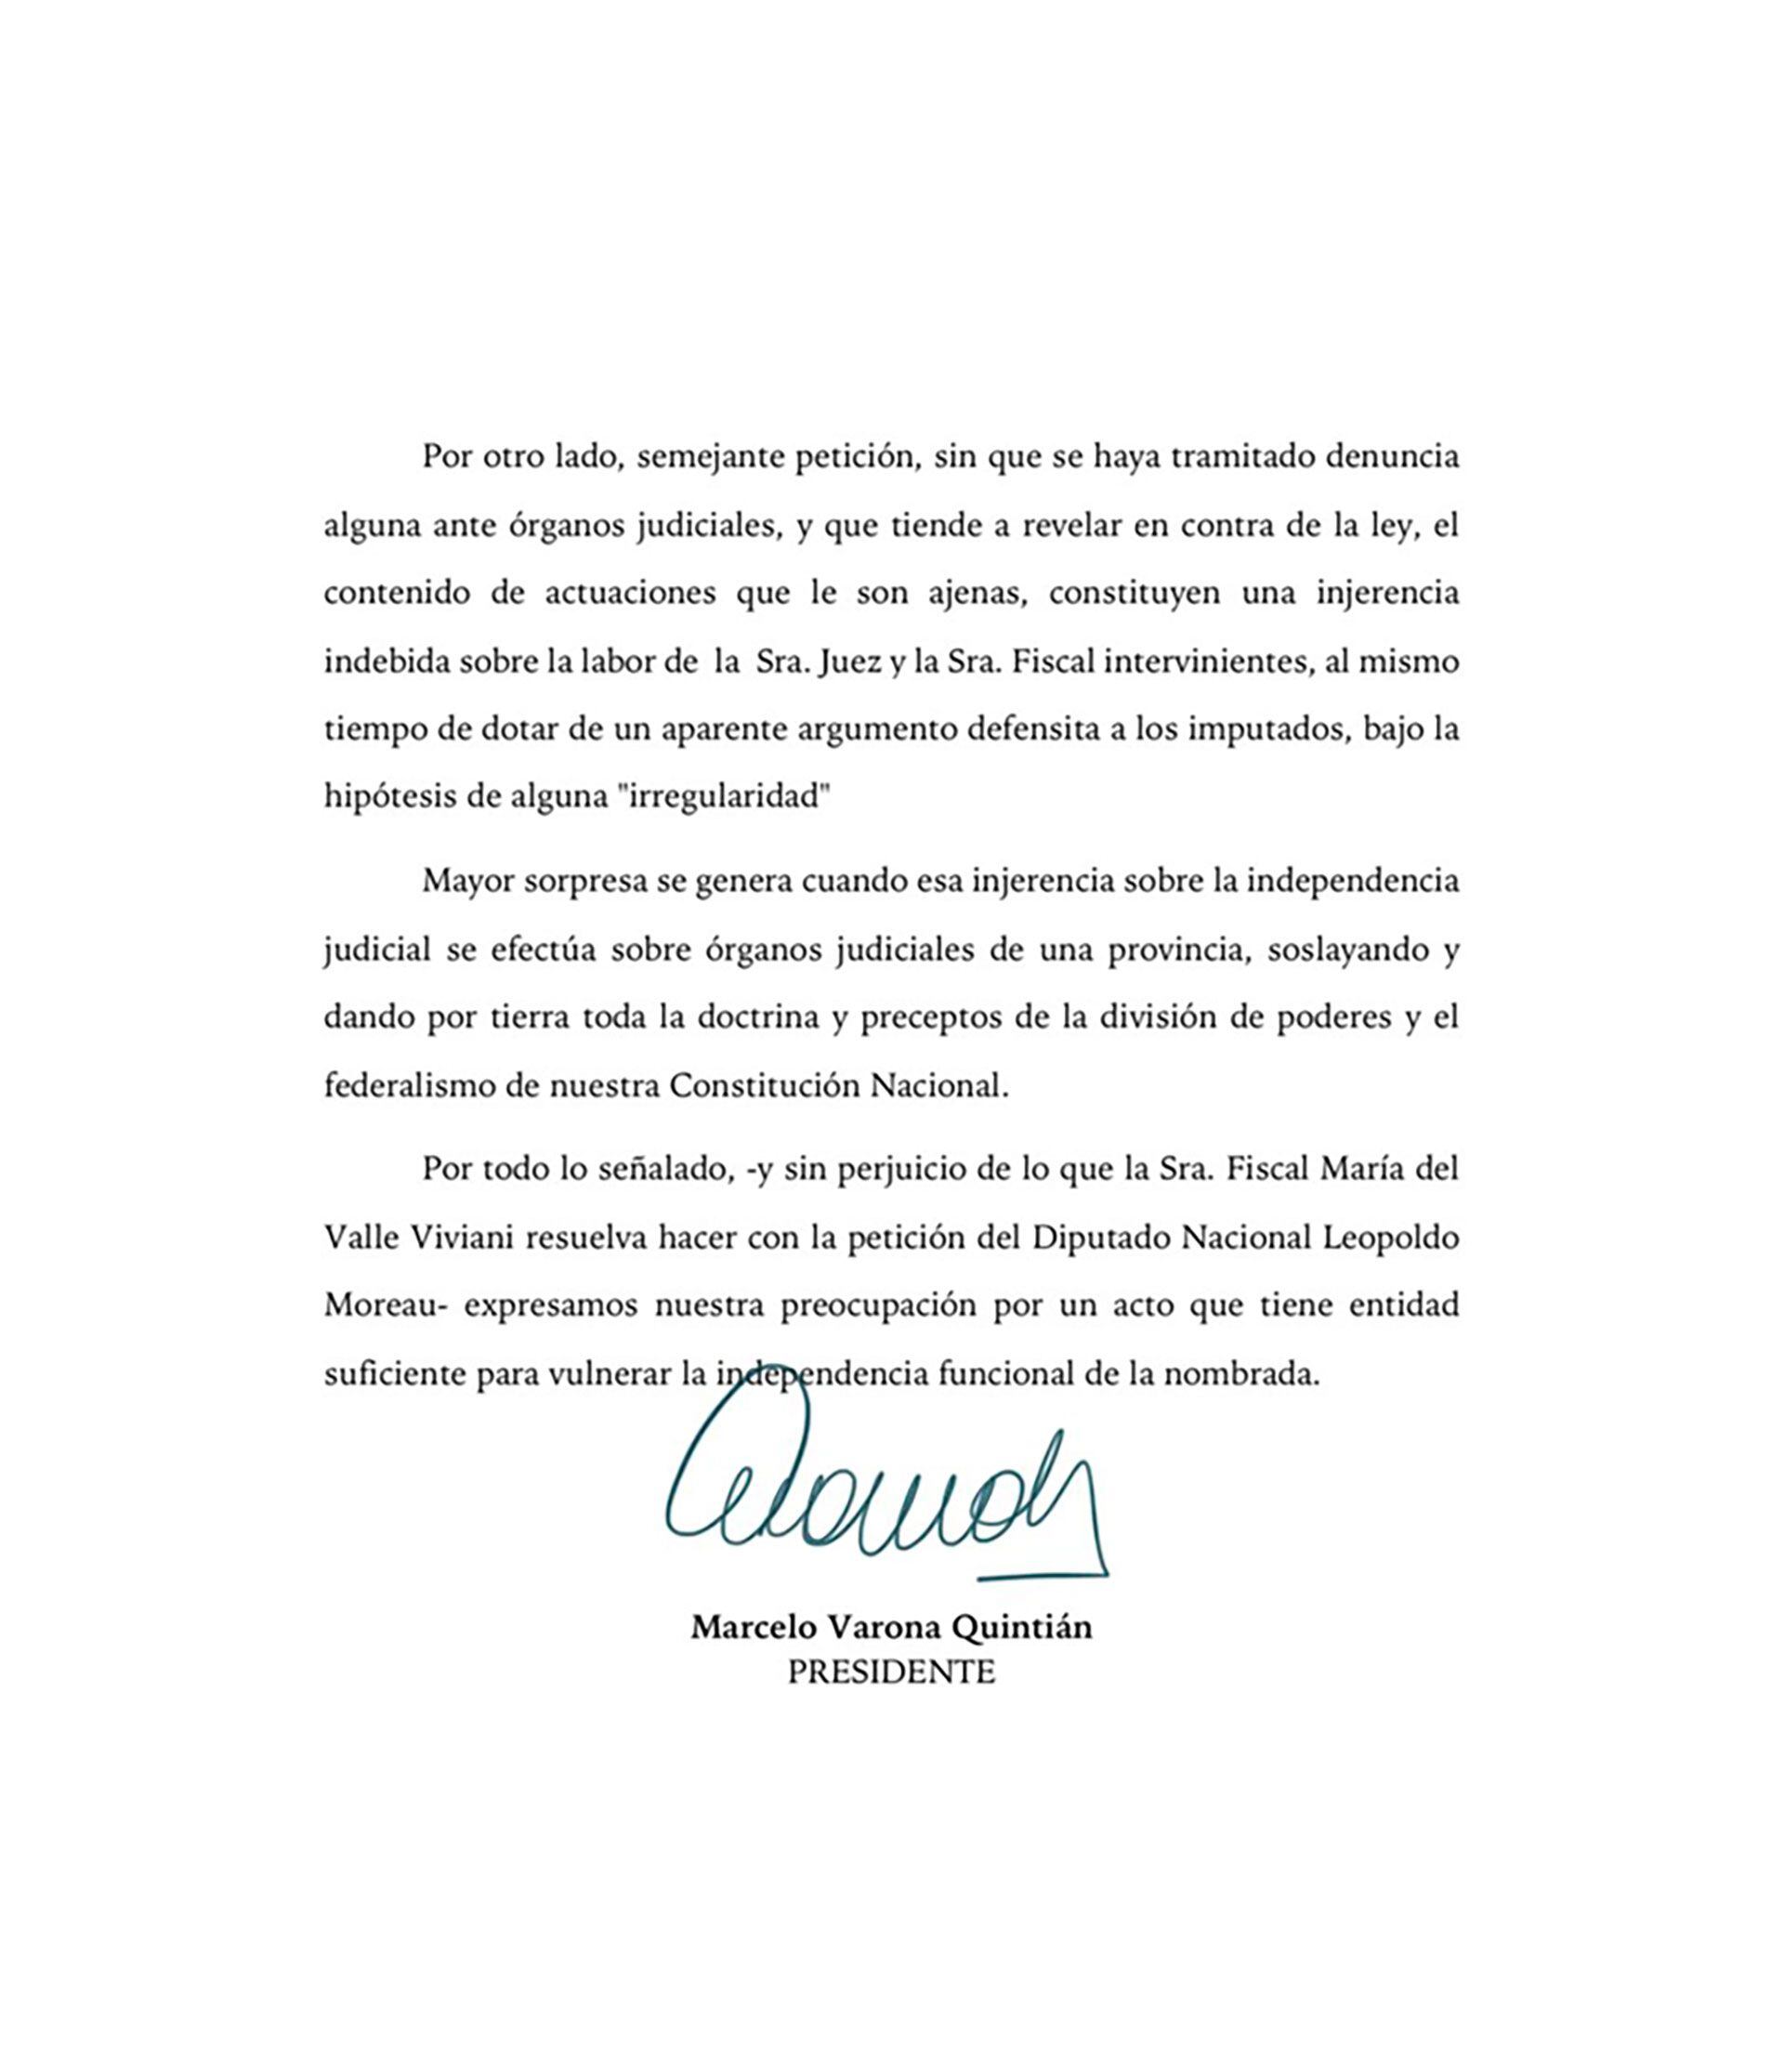 Parte del comunicado de la Asociación Argentina de Fiscales (AAF) en apoyo a la jueza María Eugenia Maiztegui y la fiscal María del Valle Viviani. 